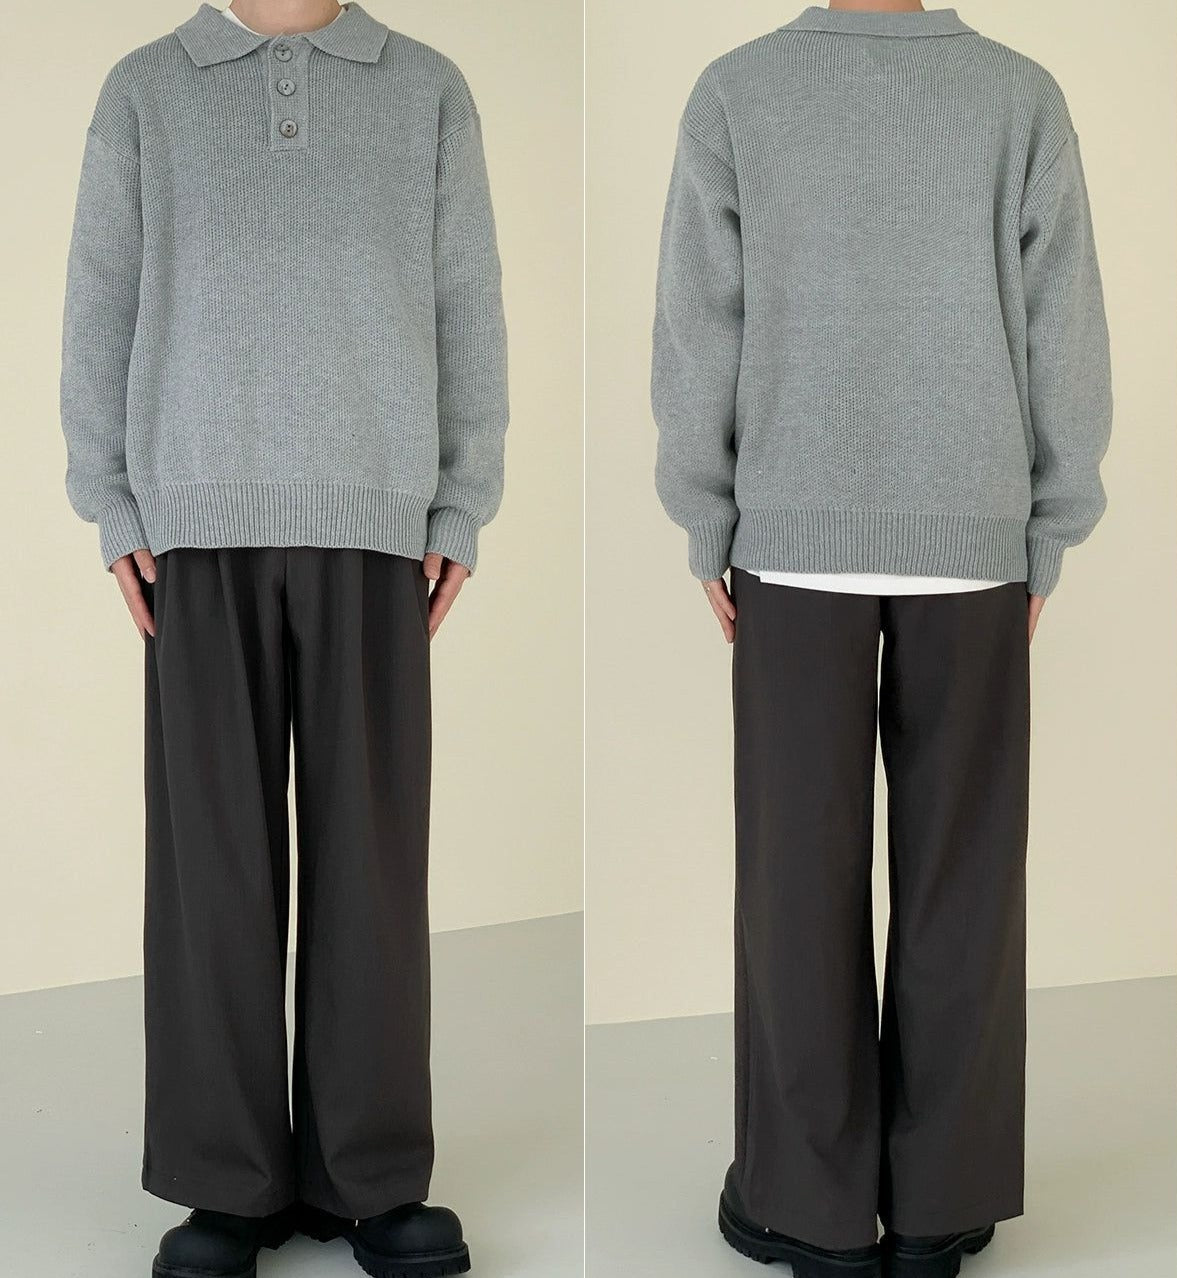 Zhou Buttoned Polo Sweater-korean-fashion-Sweater-Zhou's Closet-OH Garments